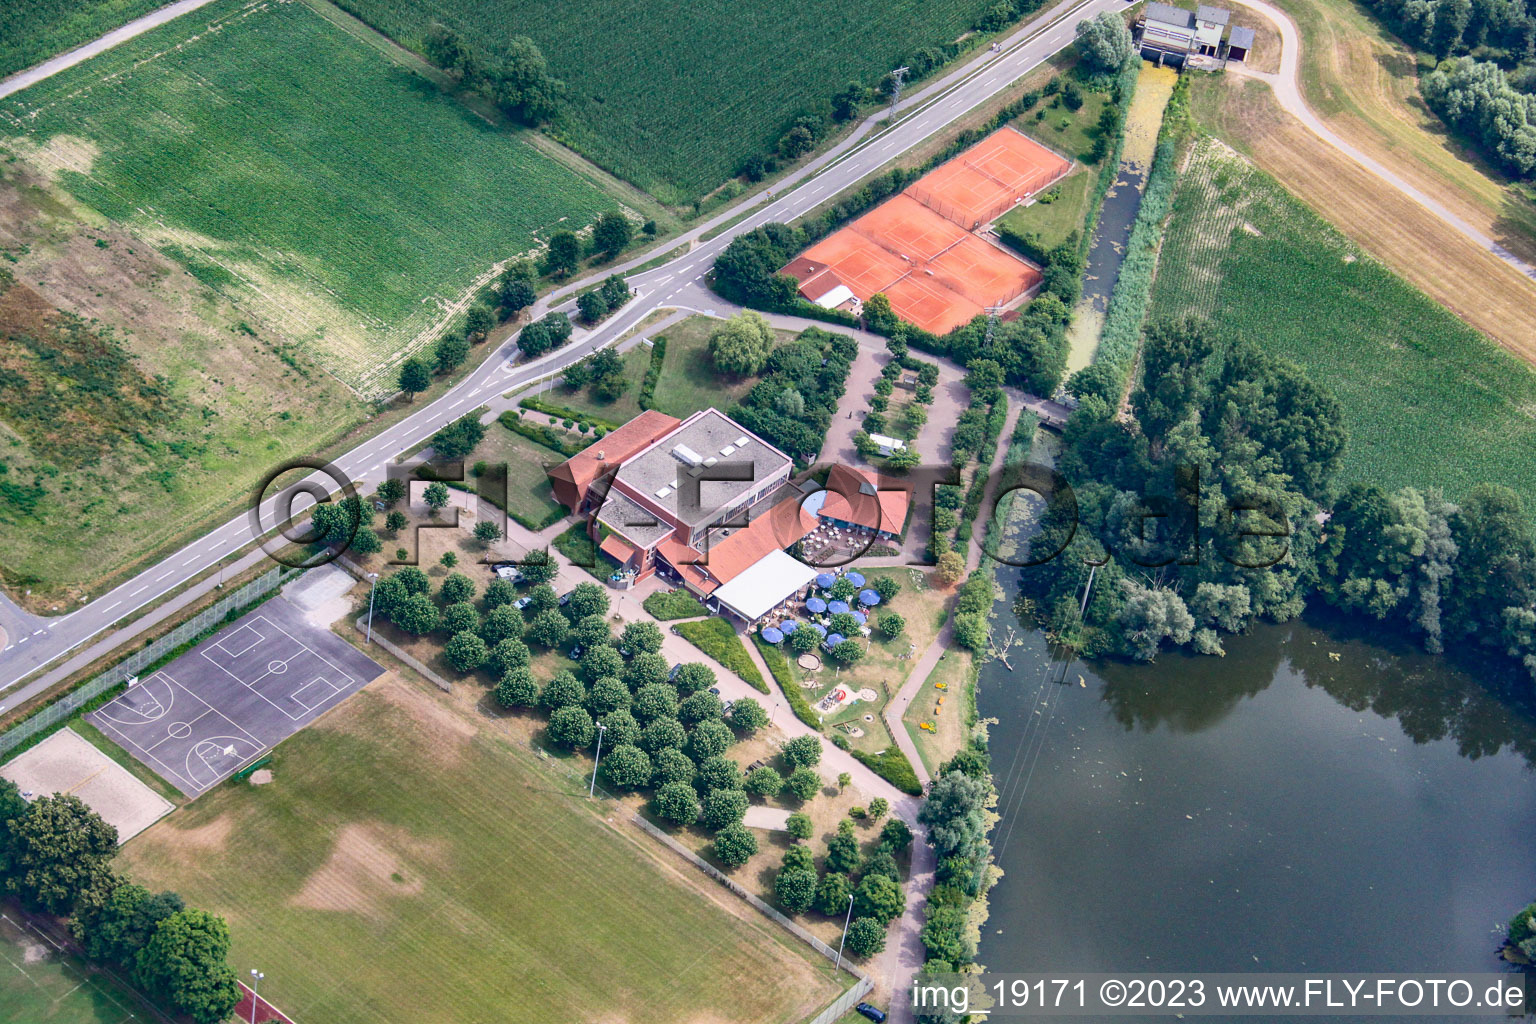 Leimersheim dans le département Rhénanie-Palatinat, Allemagne vu d'un drone